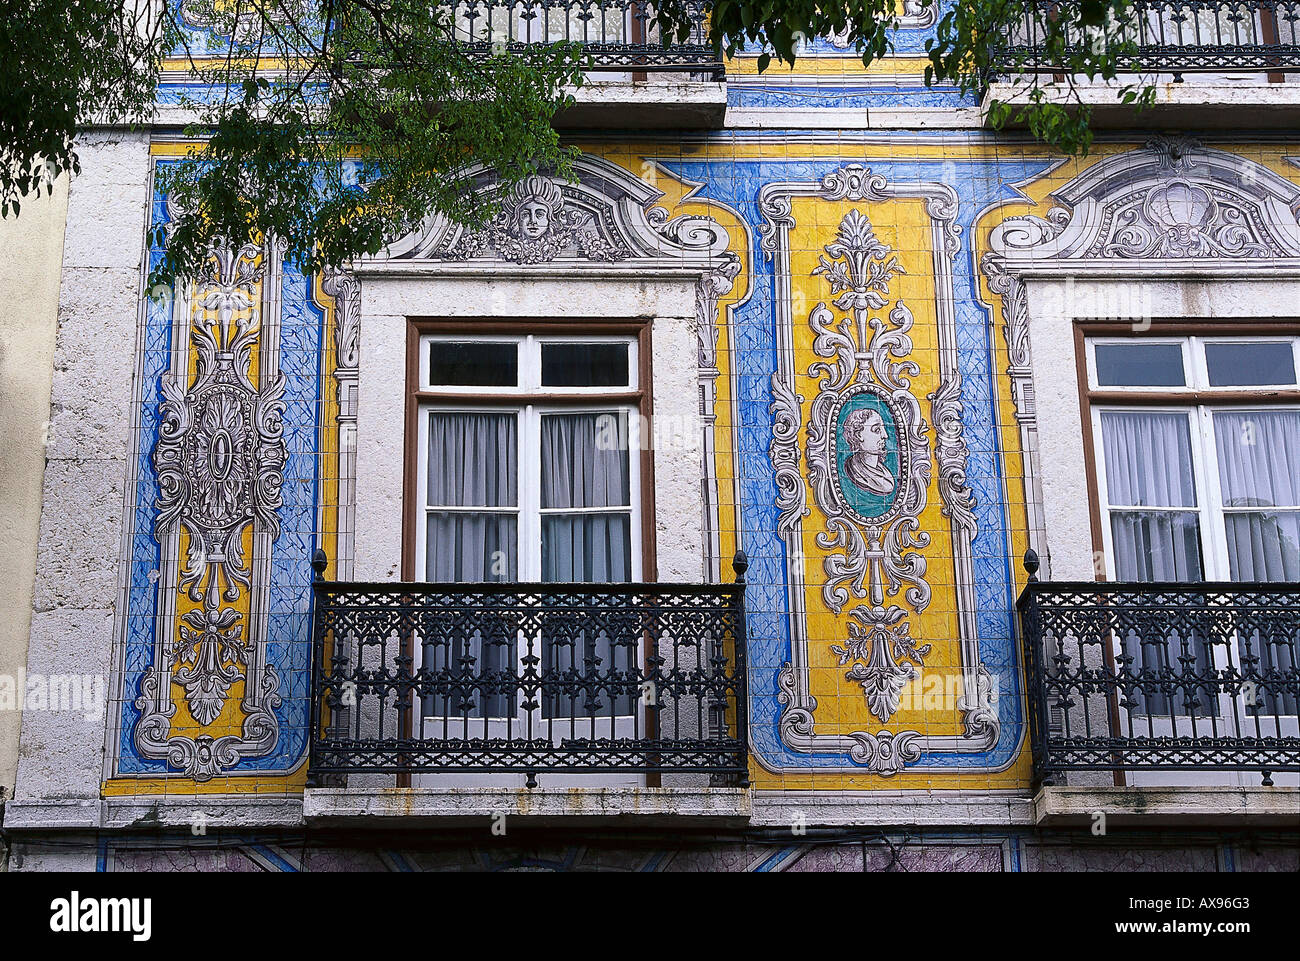 Decorated facade, Campo de Santa Clara, Lisbon, Portugal Stock Photo - Alamy